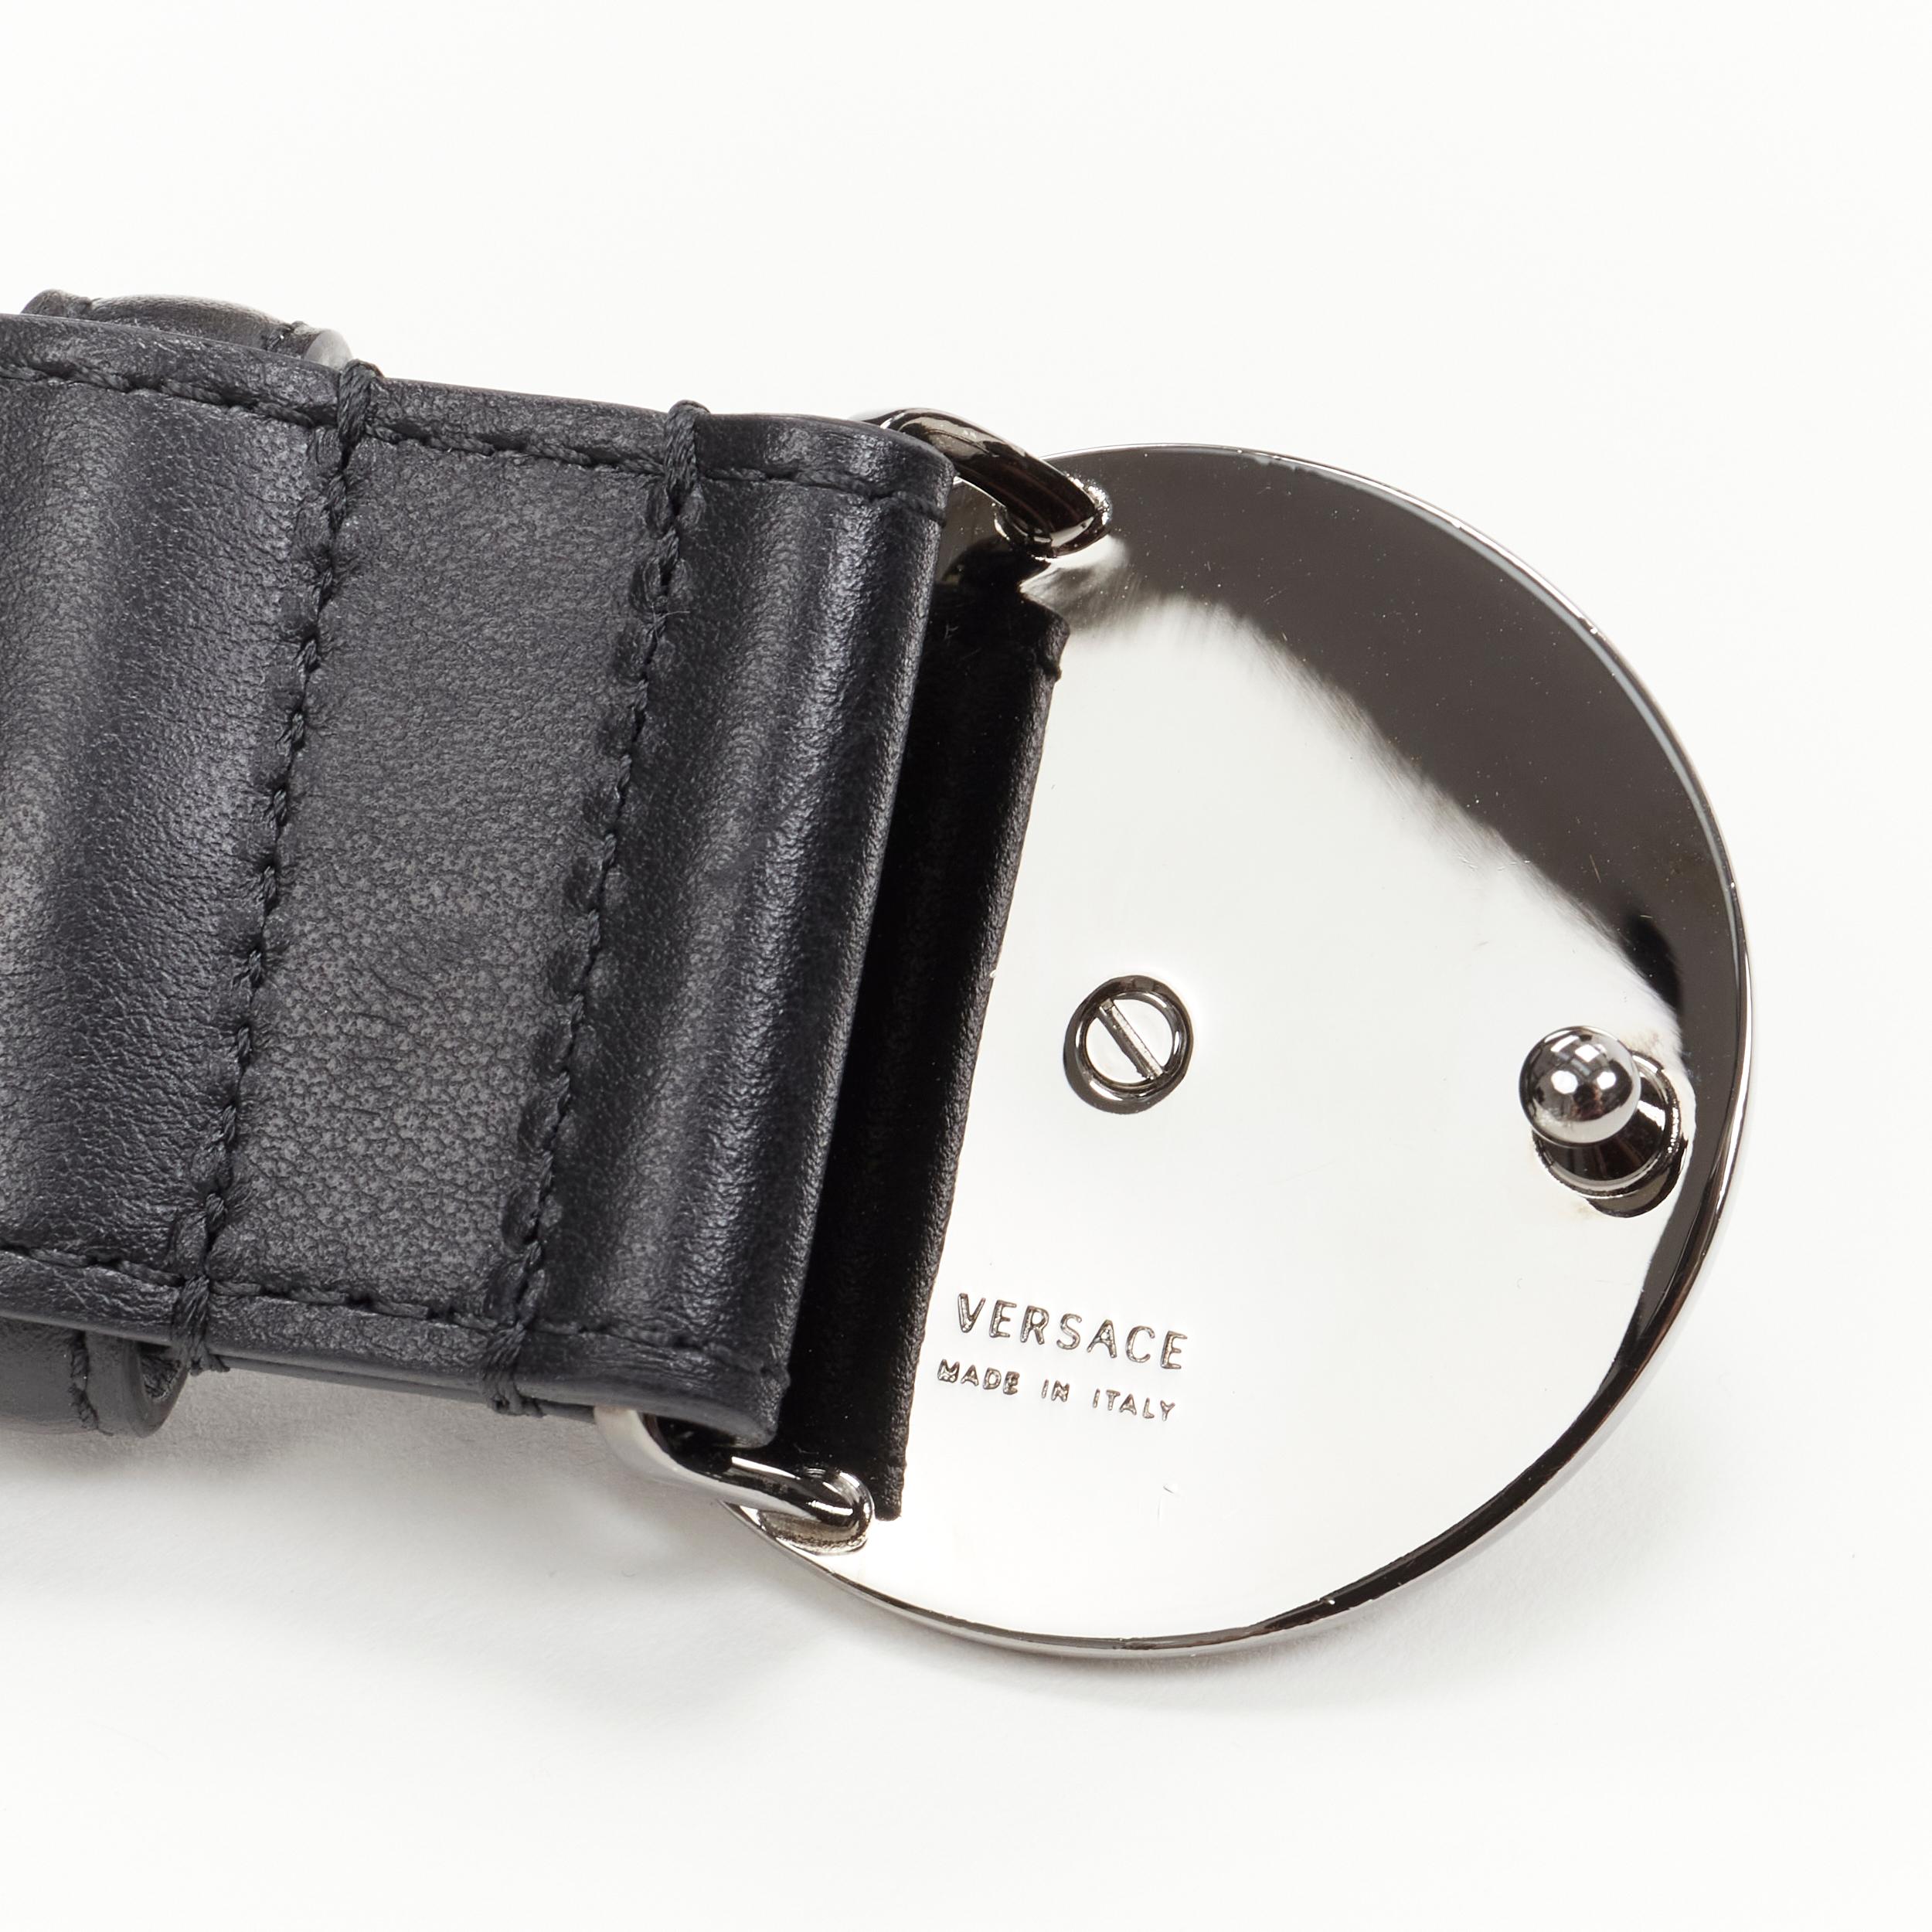 Versace, ceinture Médaillon en cuir noir 115 cm avec boucle argentée, 44-48